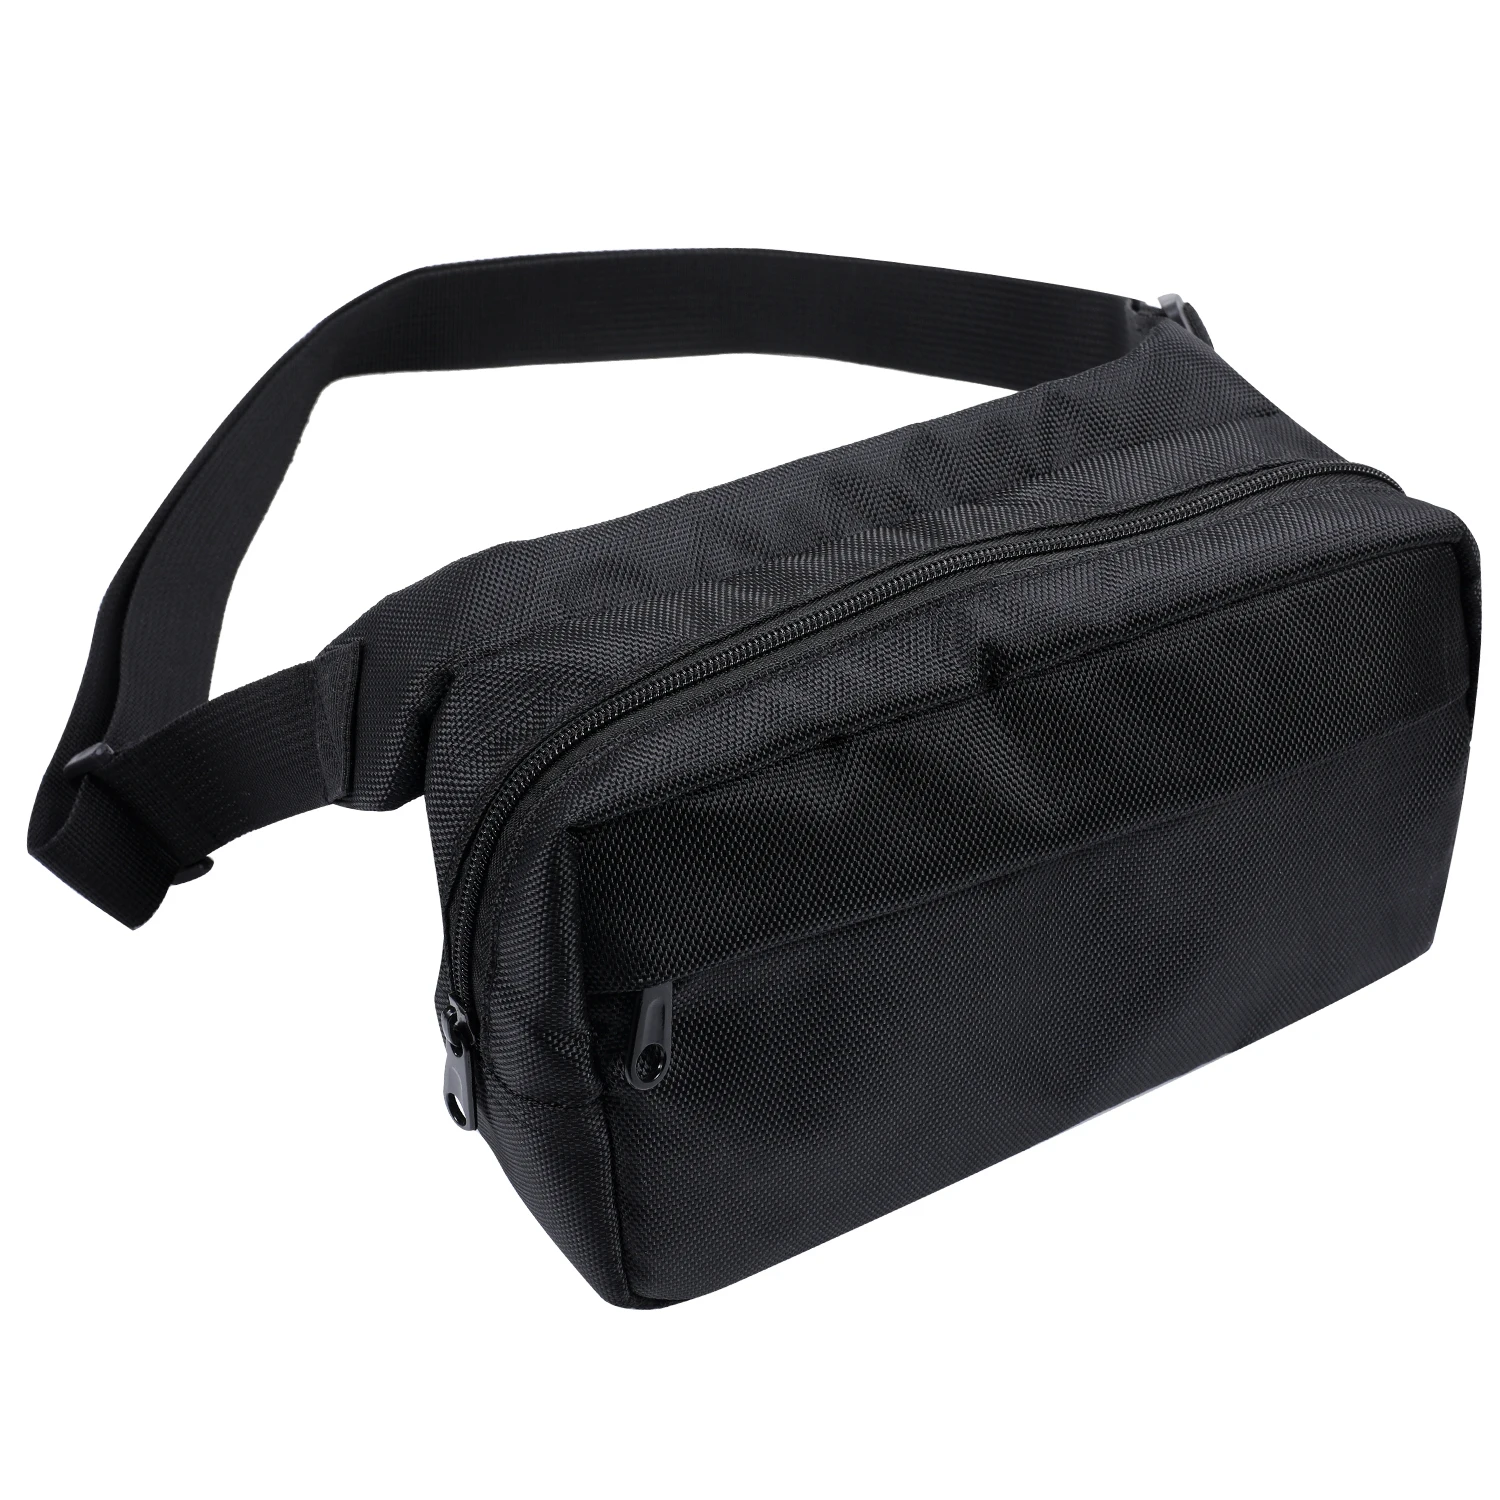 Сумка PUMA PUMA Deck Chest Bag II, цвет: черный, RTLABJ448702 — купить в  интернет-магазине Lamoda